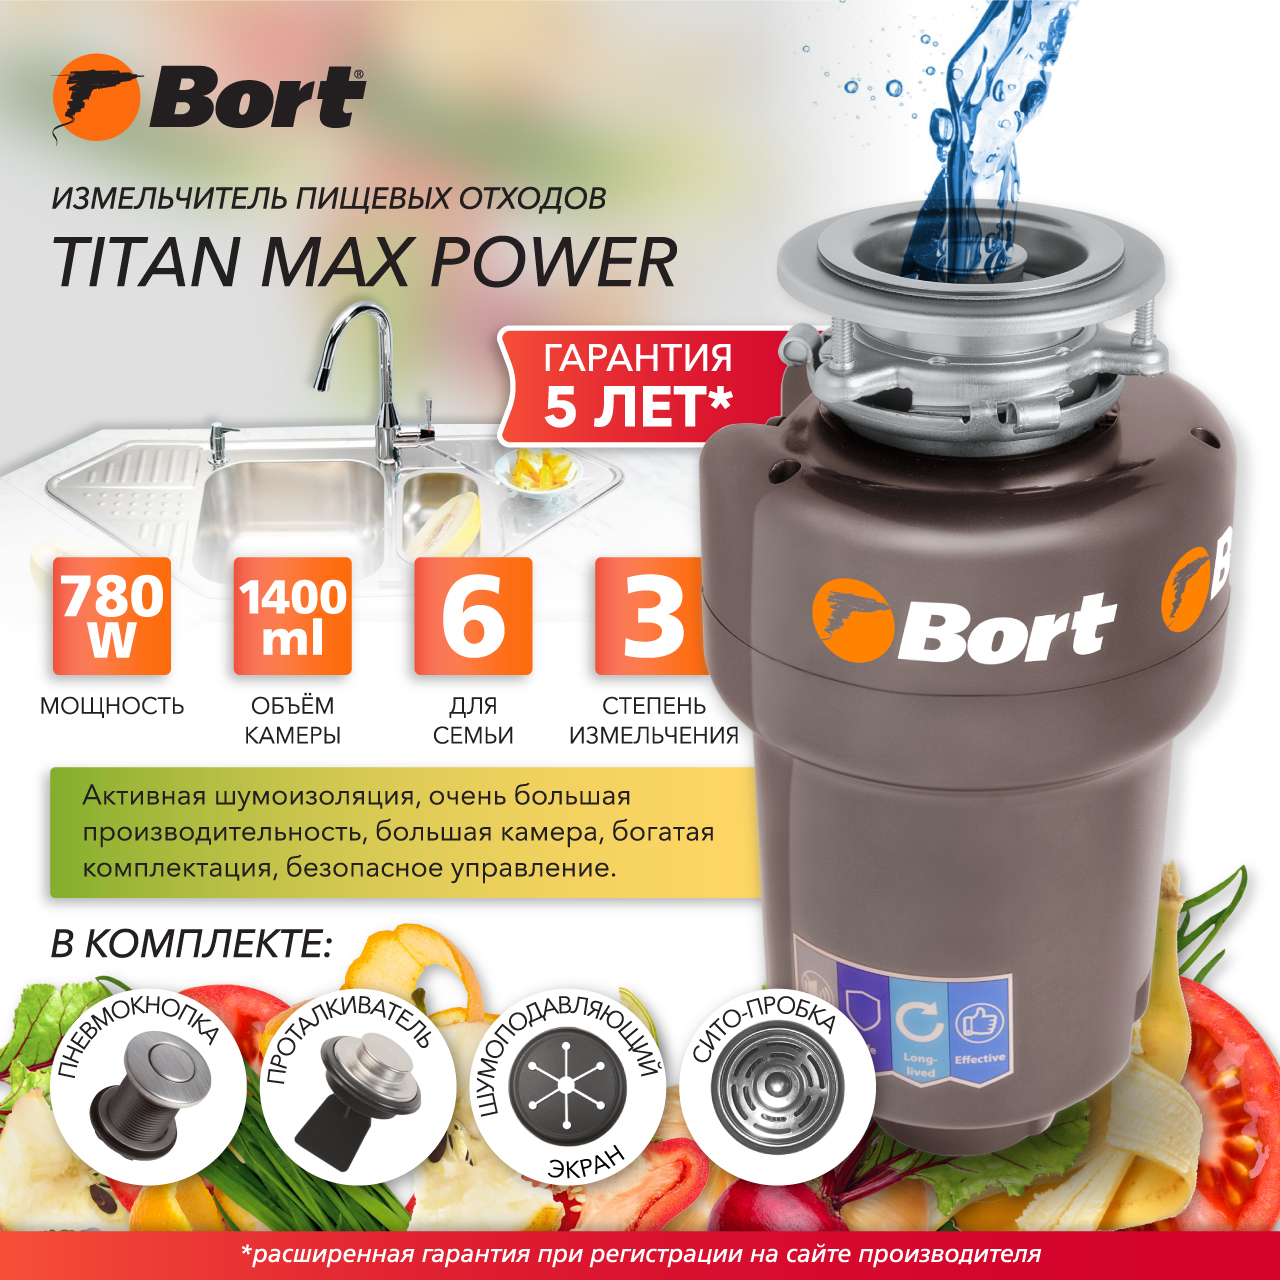 Измельчитель пищевых отходов Bort TITAN MAX POWER (91275790) серебристый электрический гравер bort